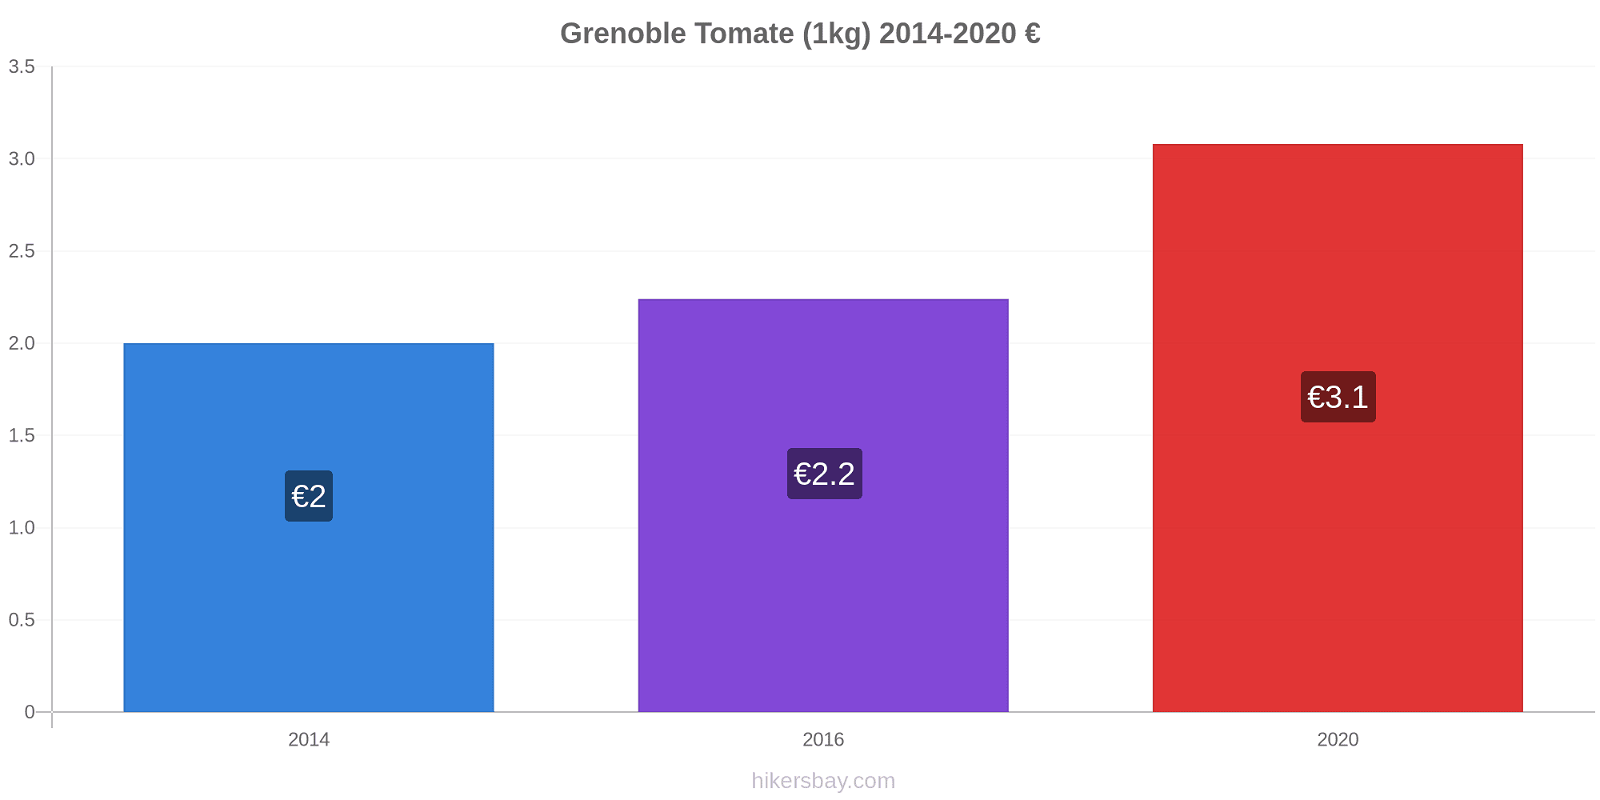 Grenoble cambios de precios Tomate (1kg) hikersbay.com